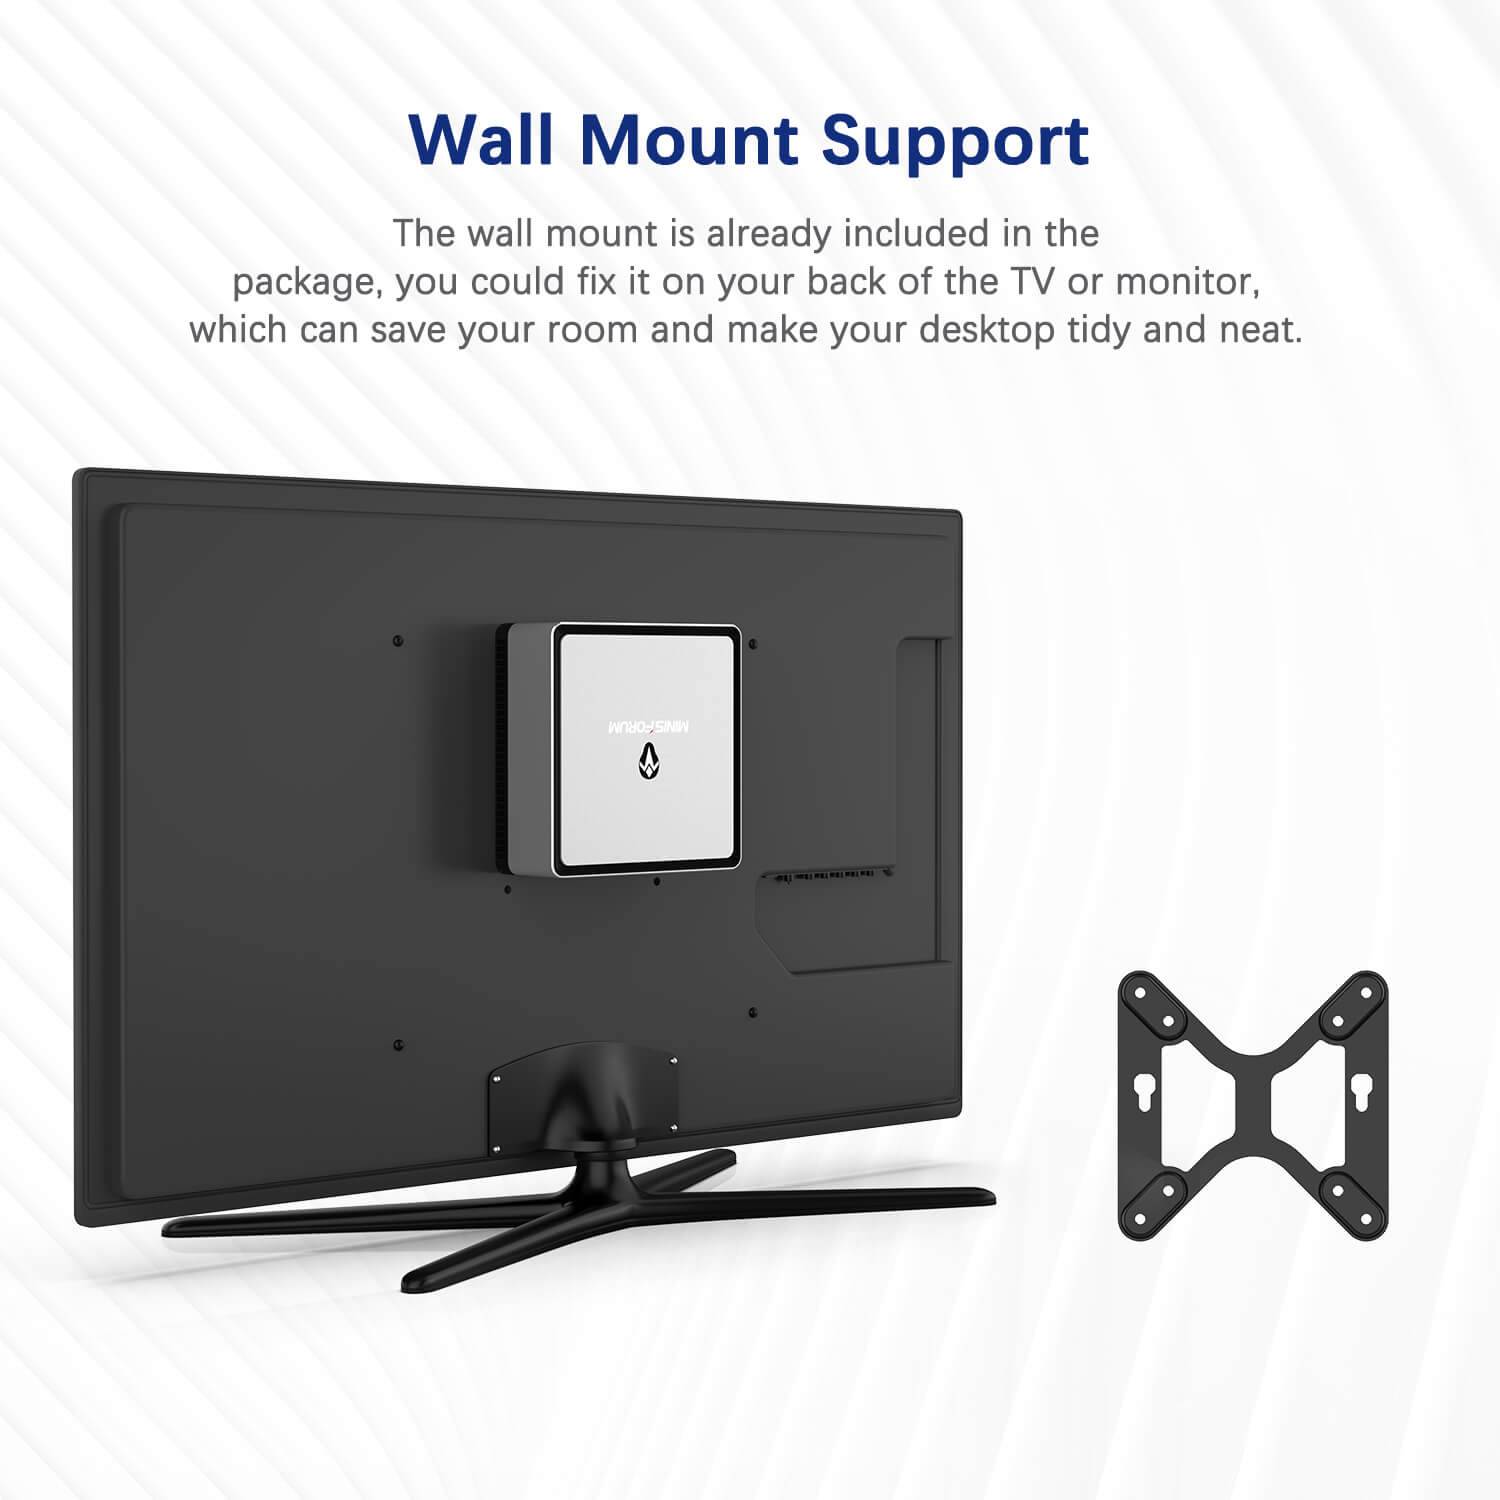 MinisForum EliteMini UM700 Showing Wall Mount Support